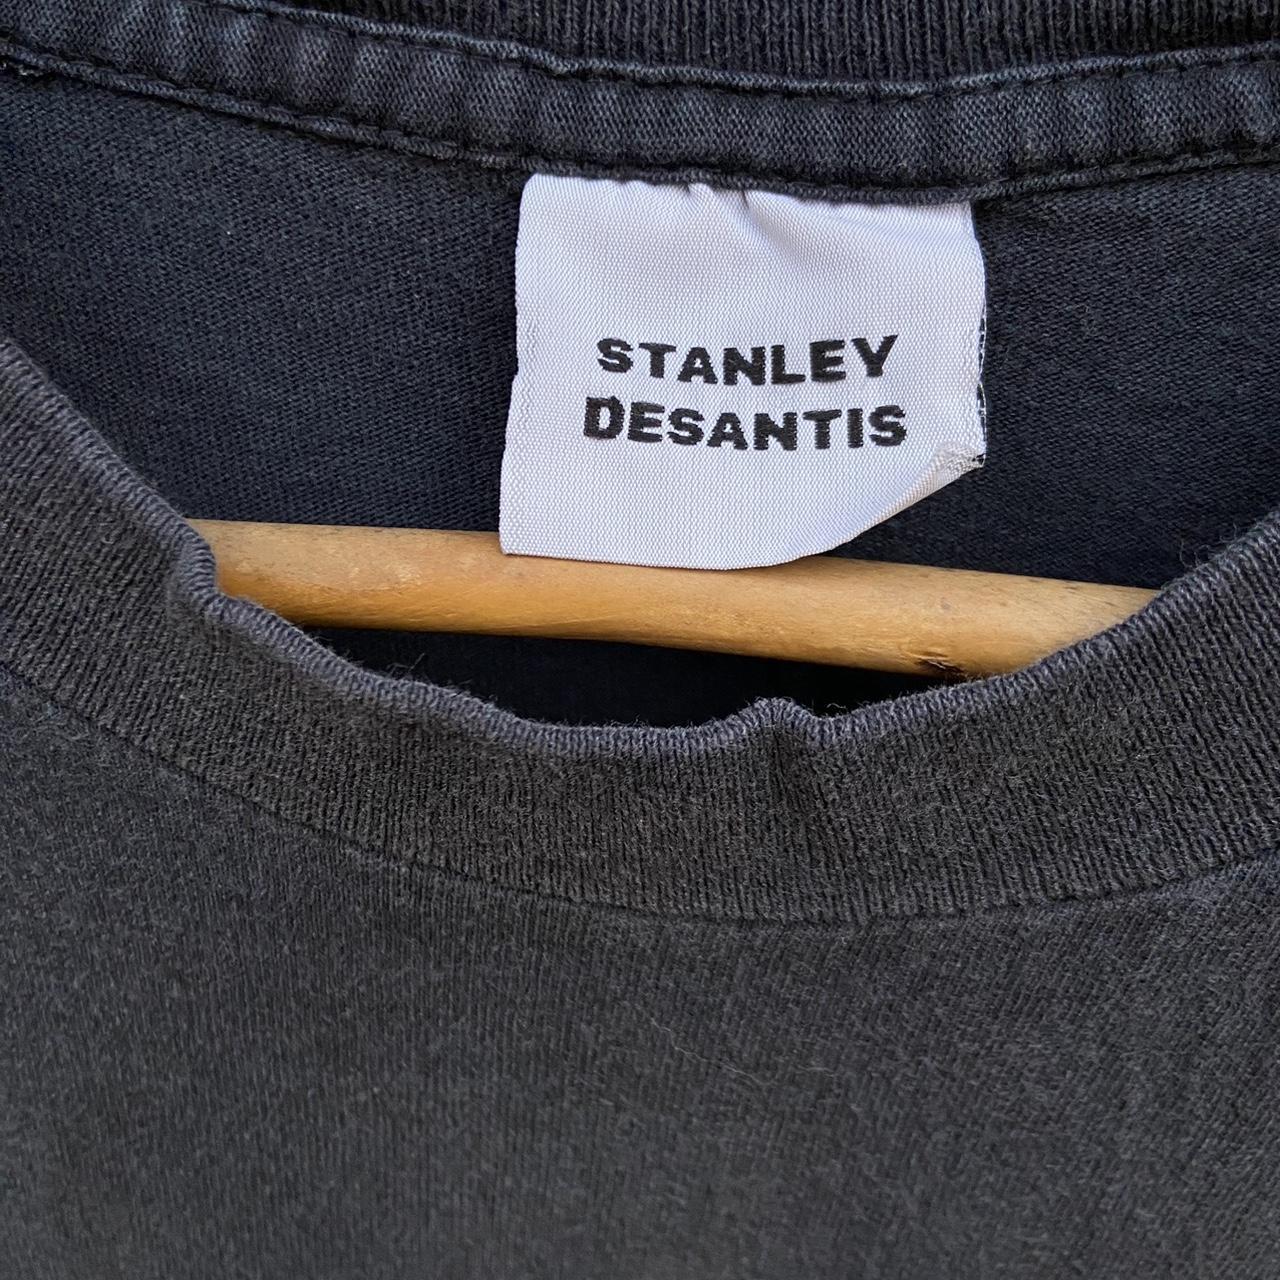 セール激安商品 1995 STANLEY DESANTIS /シンプソンズ Tシャツ サイズM